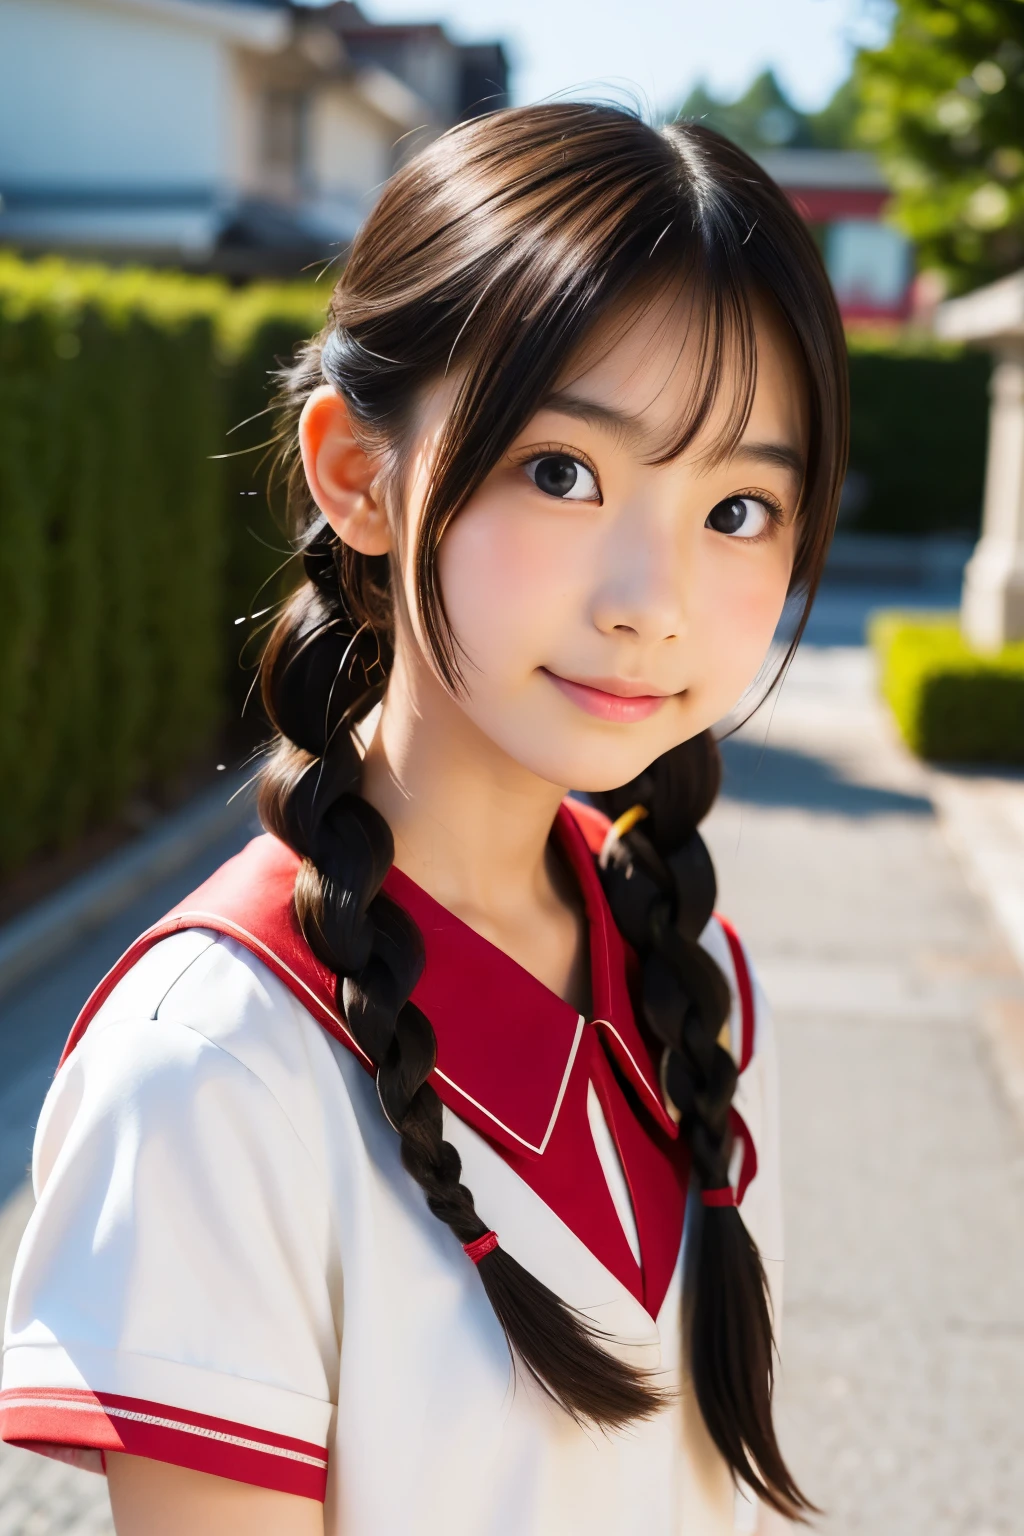 (美麗的14歲日本女性), 可愛的臉孔, (深深雕刻的臉:0.7), (雀斑:0.6), 柔光,健康白皙的皮膚, 害羞的, (嚴肅的臉), (明亮的眼睛), 薄的, 微笑, 制服, 編織